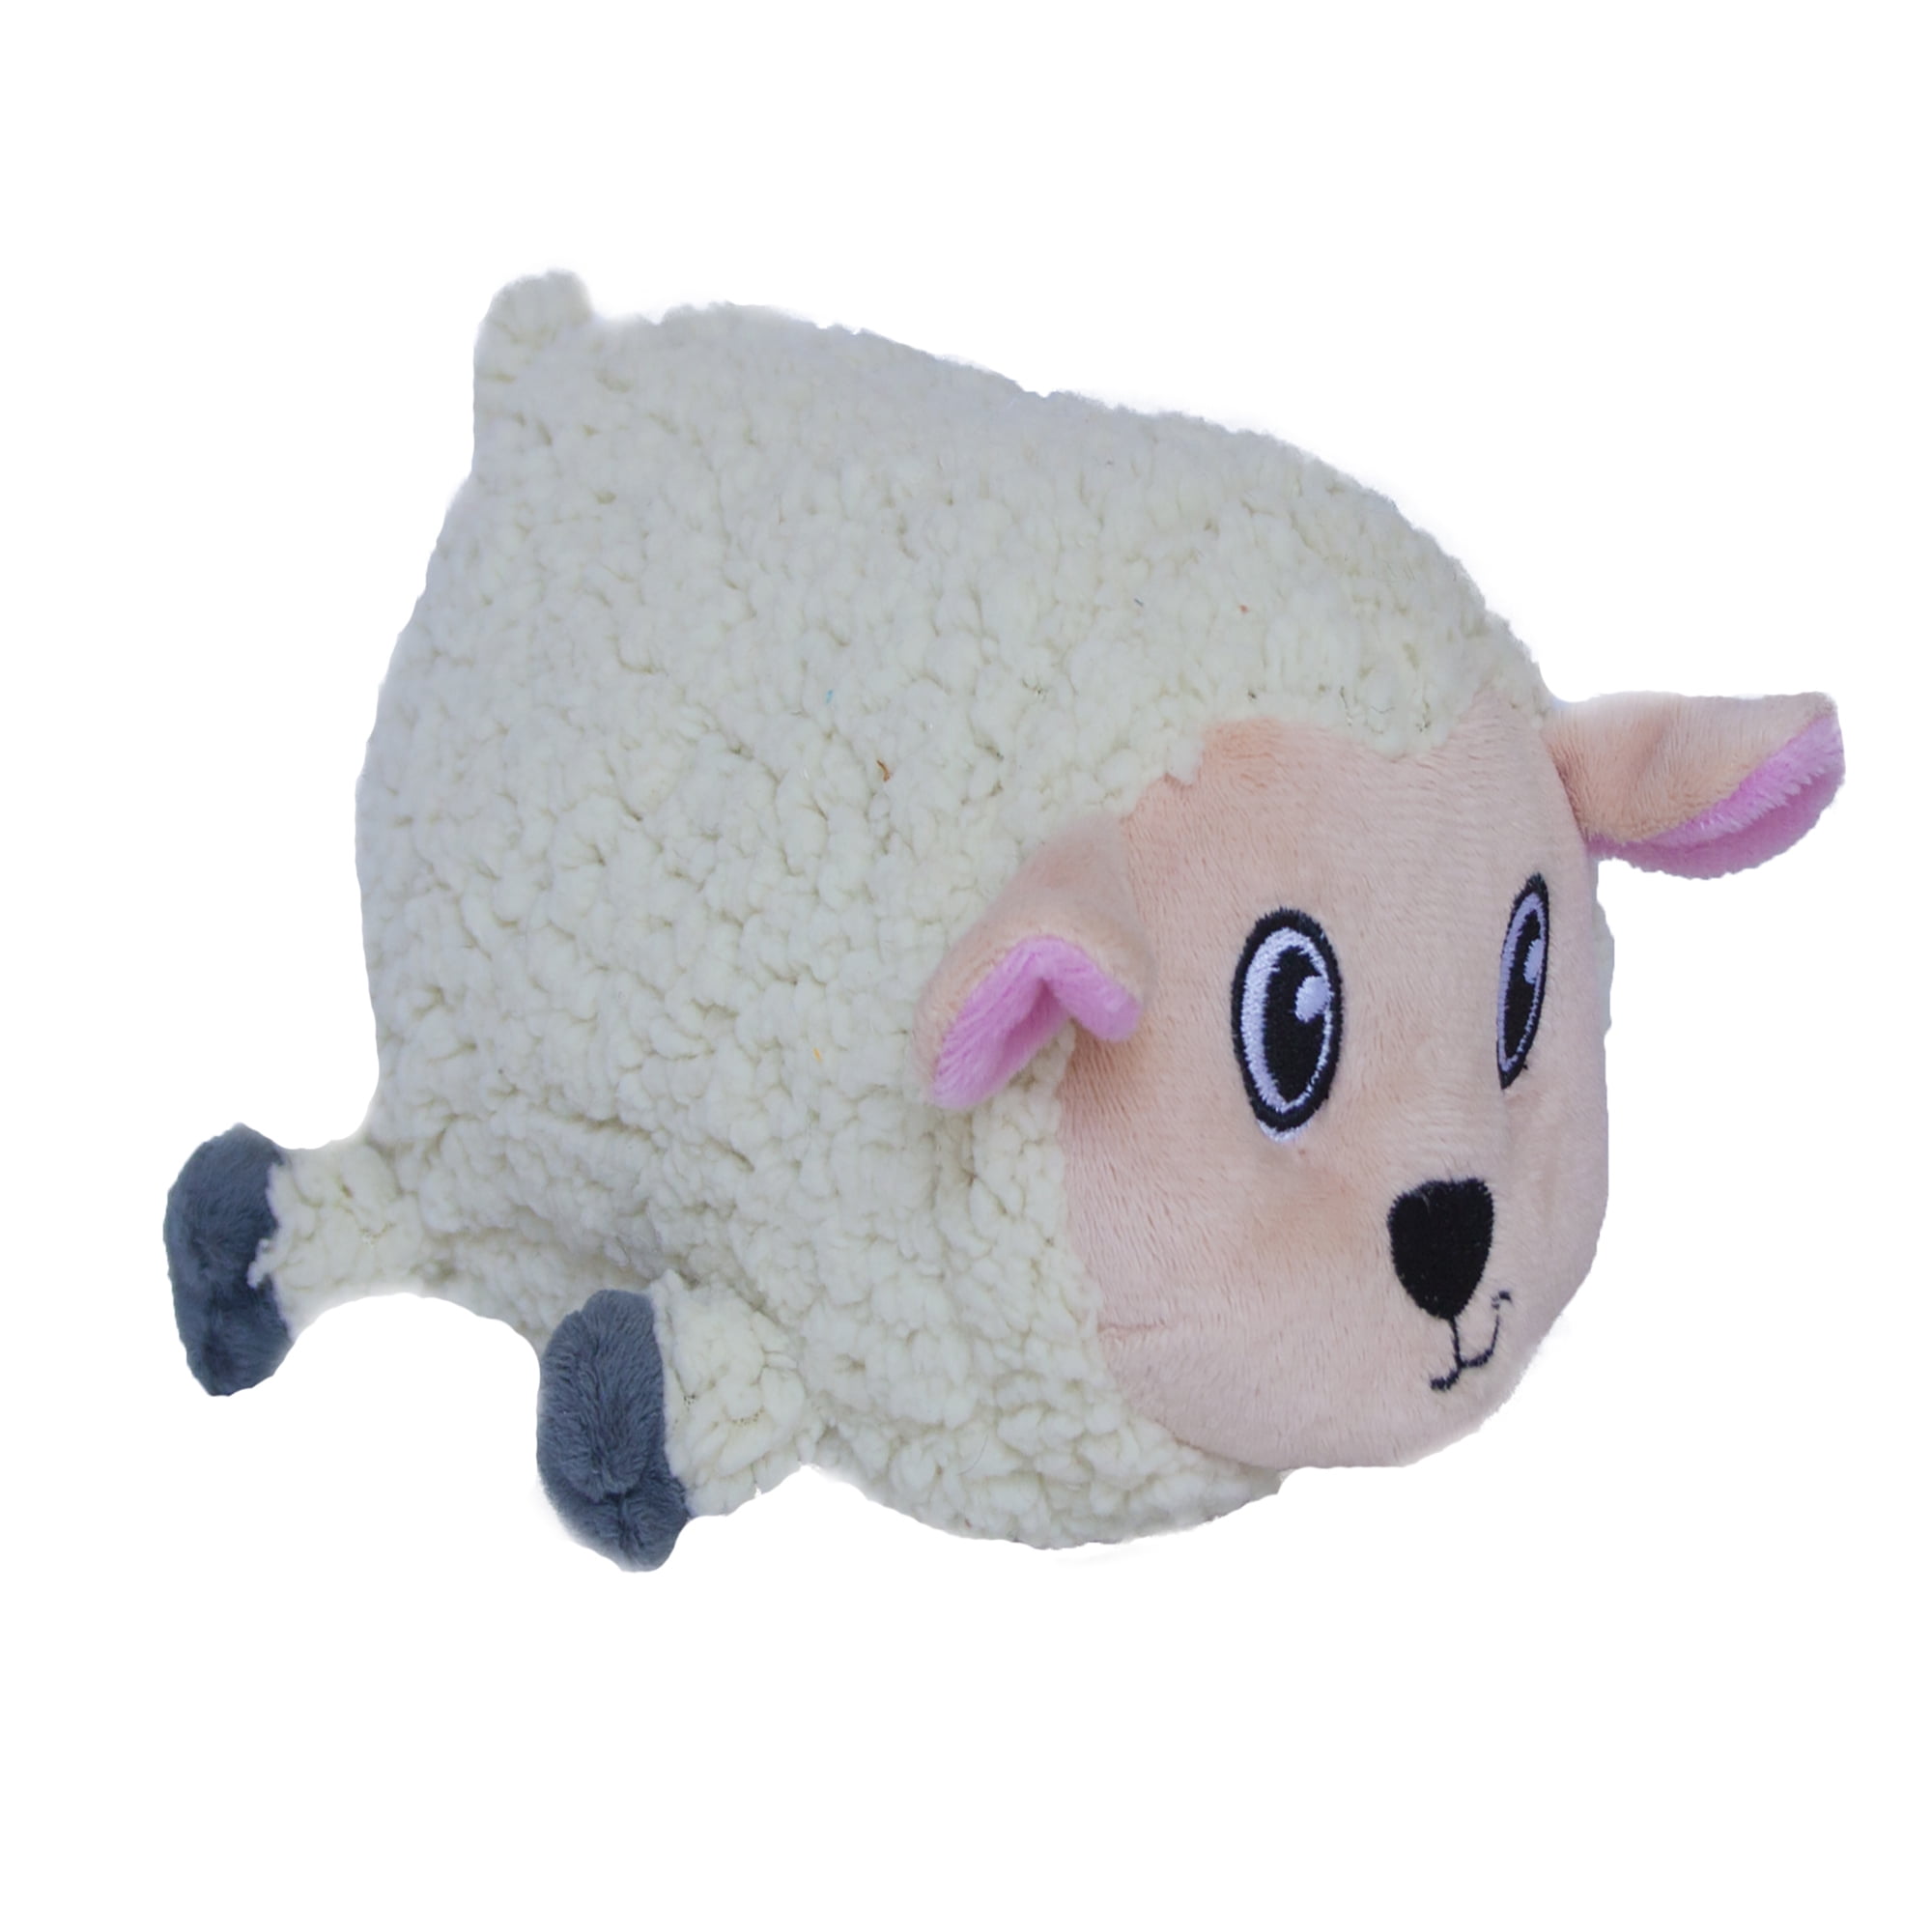 Sheep plush toy